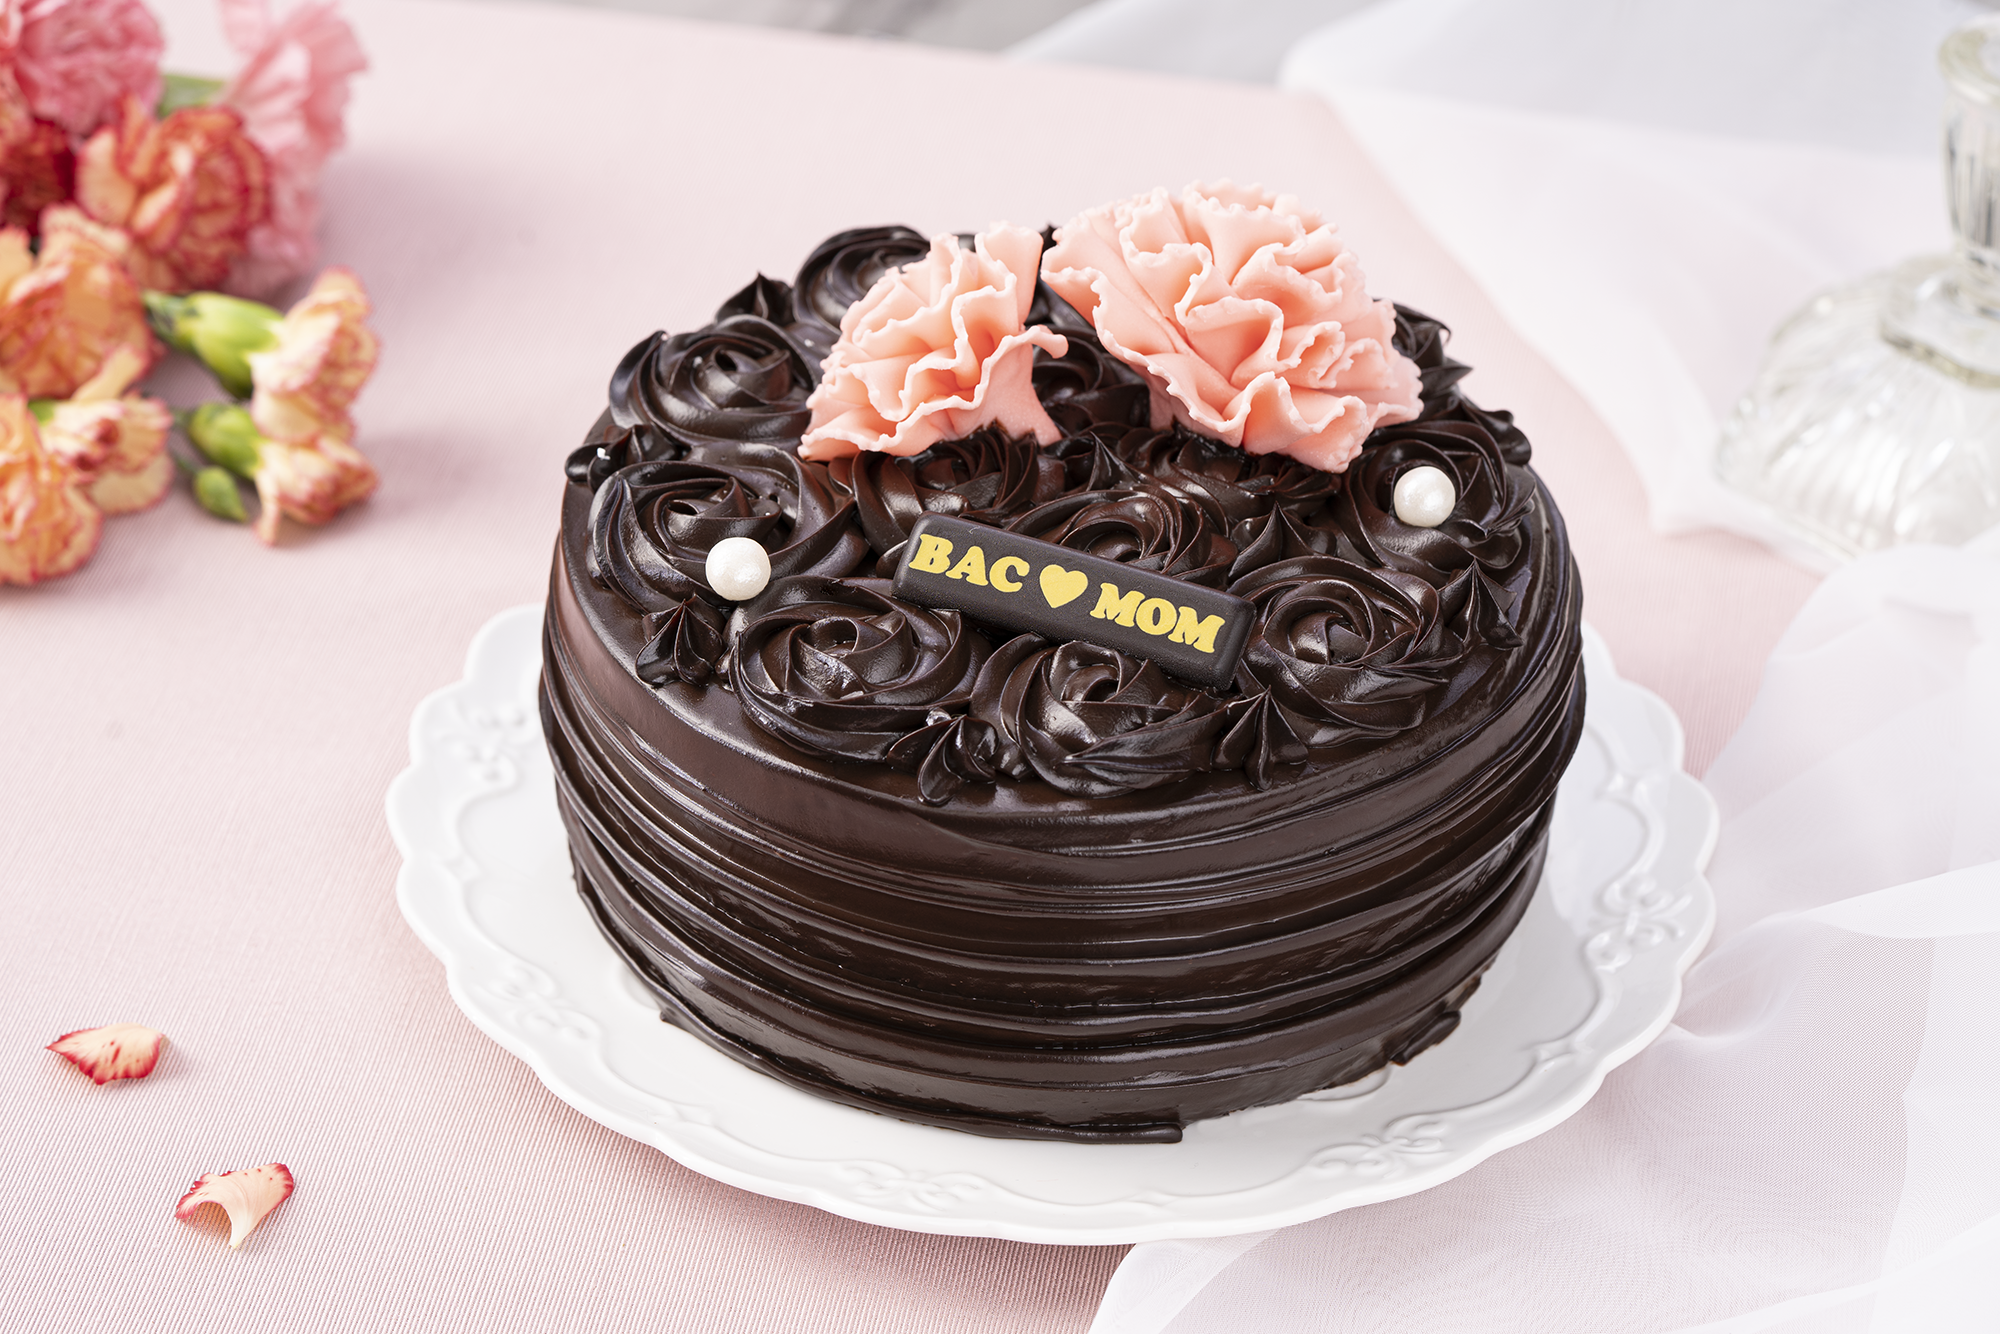 巧克力蛋糕專家「BAC」新品「伯爵夫人茶韻蛋糕」於 4/27 預訂且付款完成再贈「BAC 質感不鏽鋼蛋糕刀」。